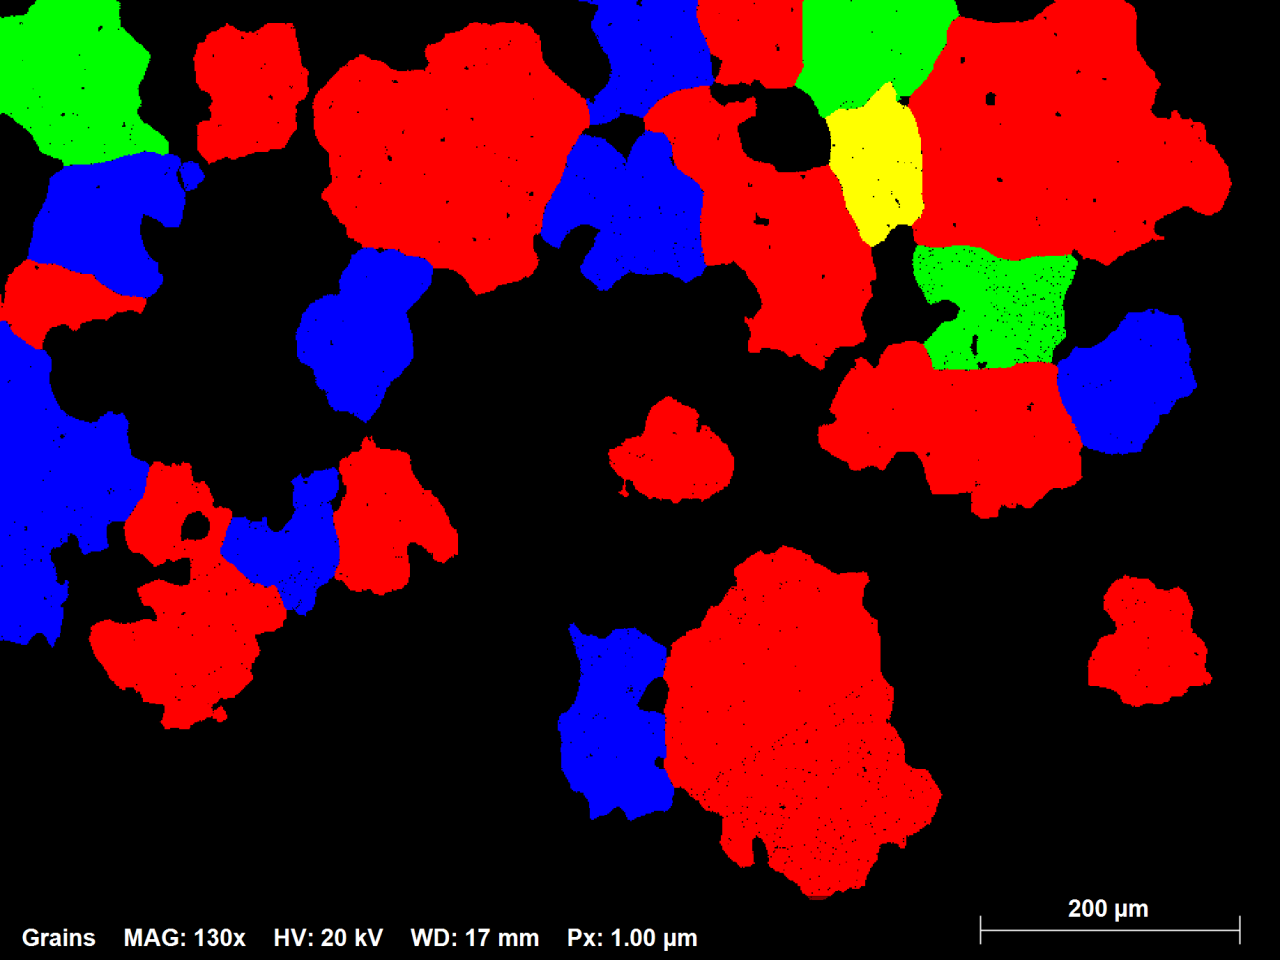 図1.3:70ミクロン以上の直径を持つすべての粒をランダムな色で示す镍合金EBSDマップのサブセット。総数の1%の粒がマップ領域の約42%を占めます。